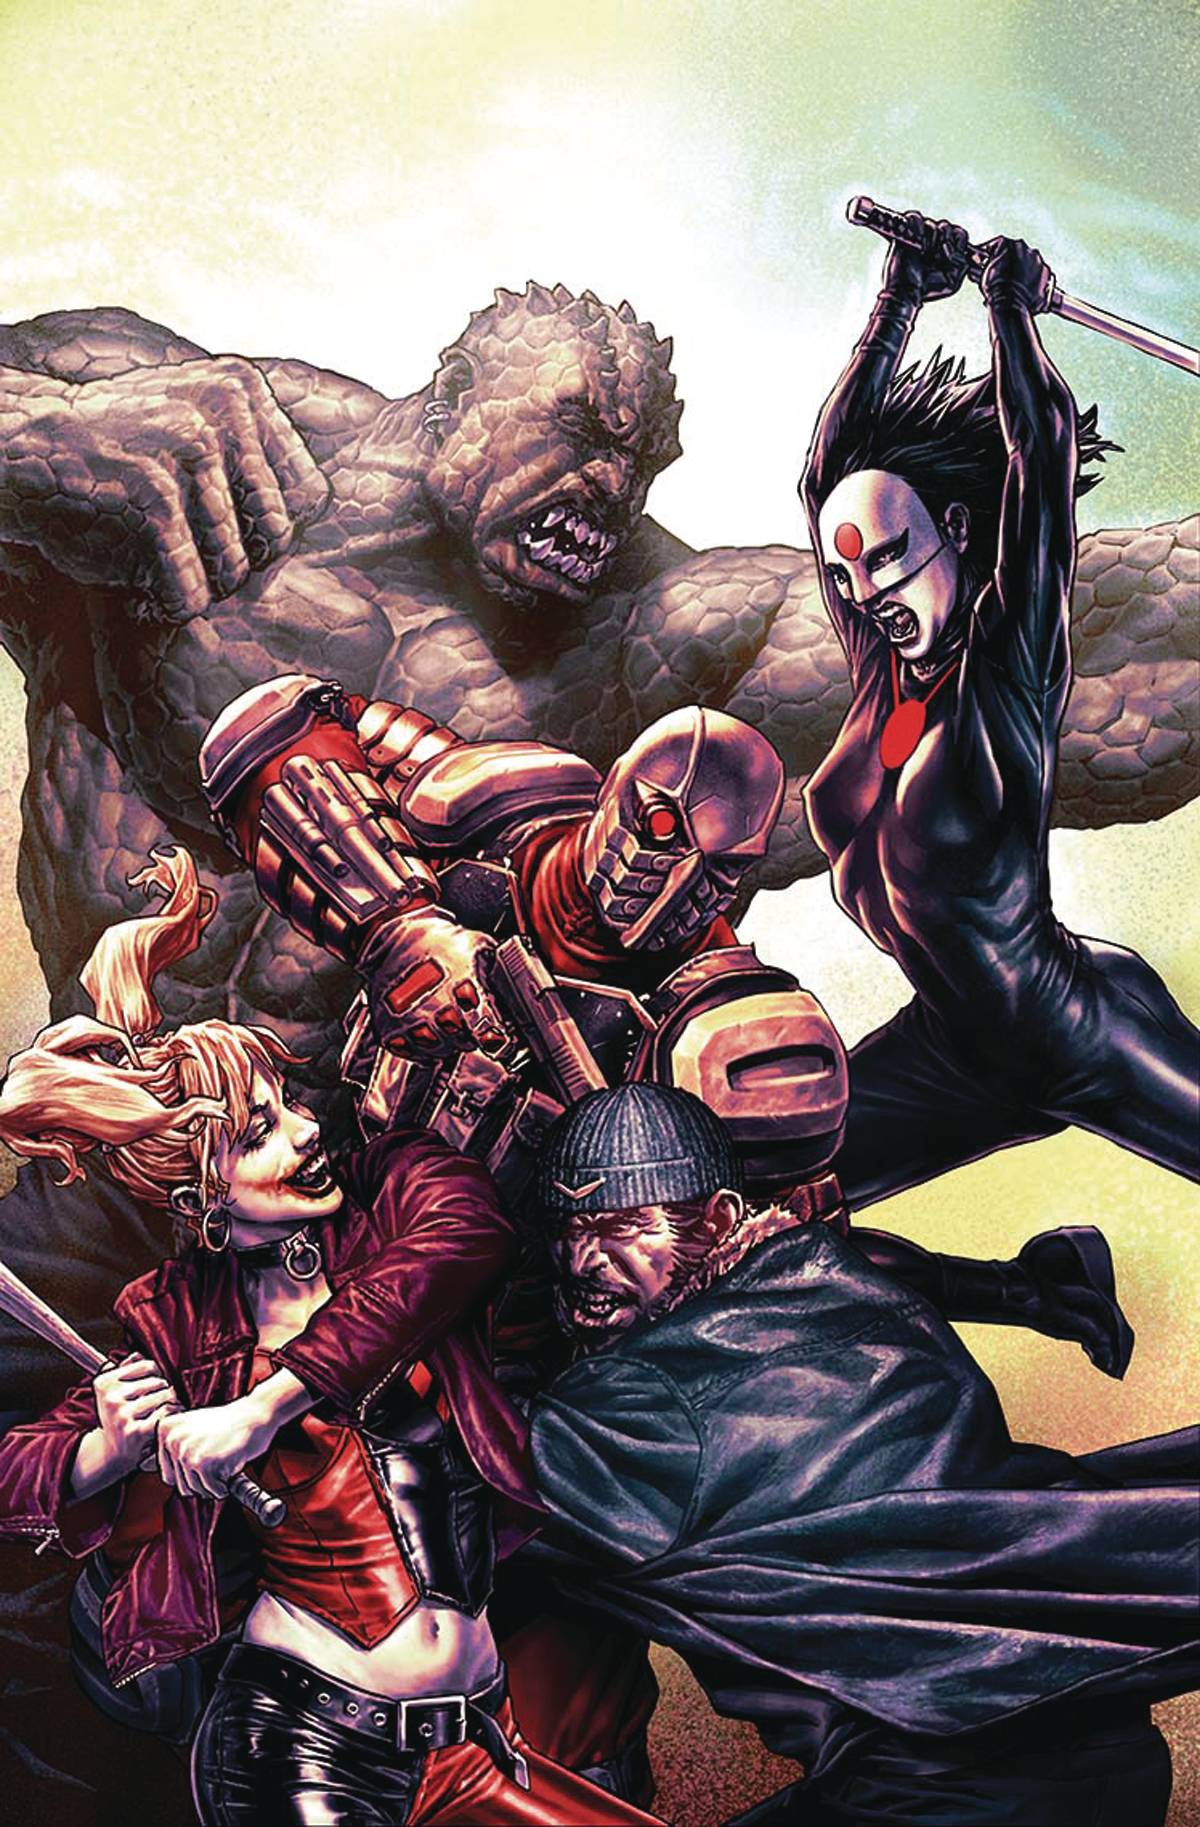 Suicide Squad #10 Variant Edition (Justice League Vs Suicide Squad)